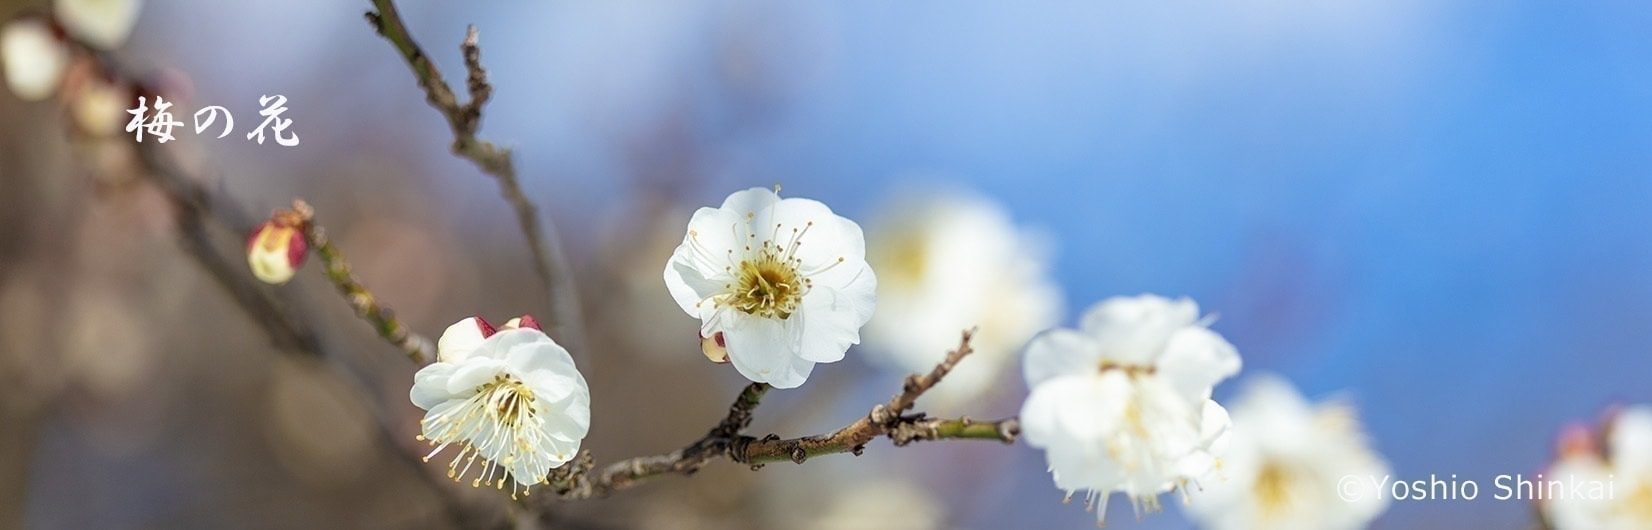 清楚に咲く白い梅